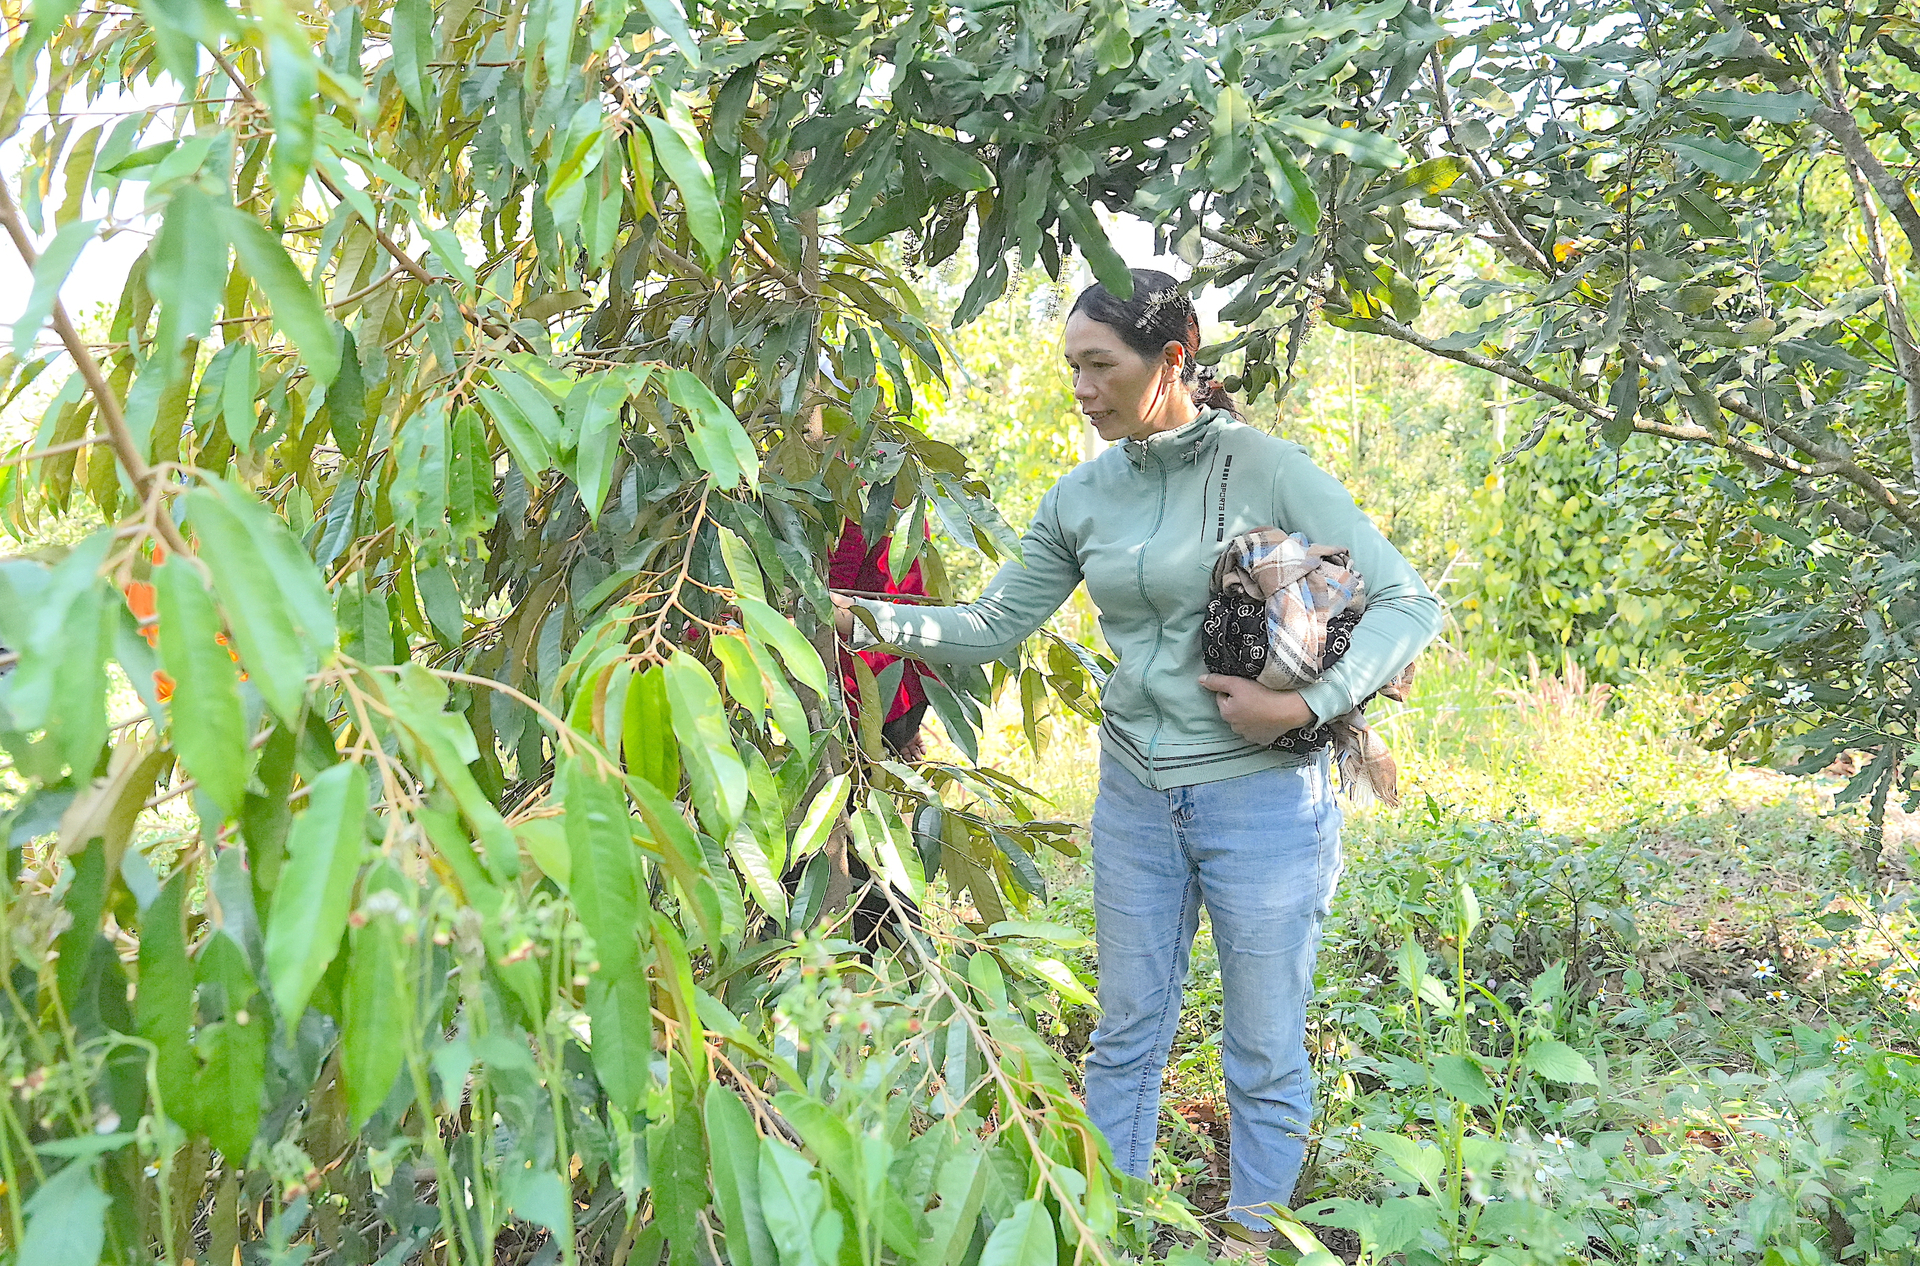 Vườn mắc ca trồng xen sầu riêng, canh tác theo hướng hữu cơ của chị Thị Nhên ở Quảng Trực, huyện Tuy Đức. Ảnh: Hồng Thủy.